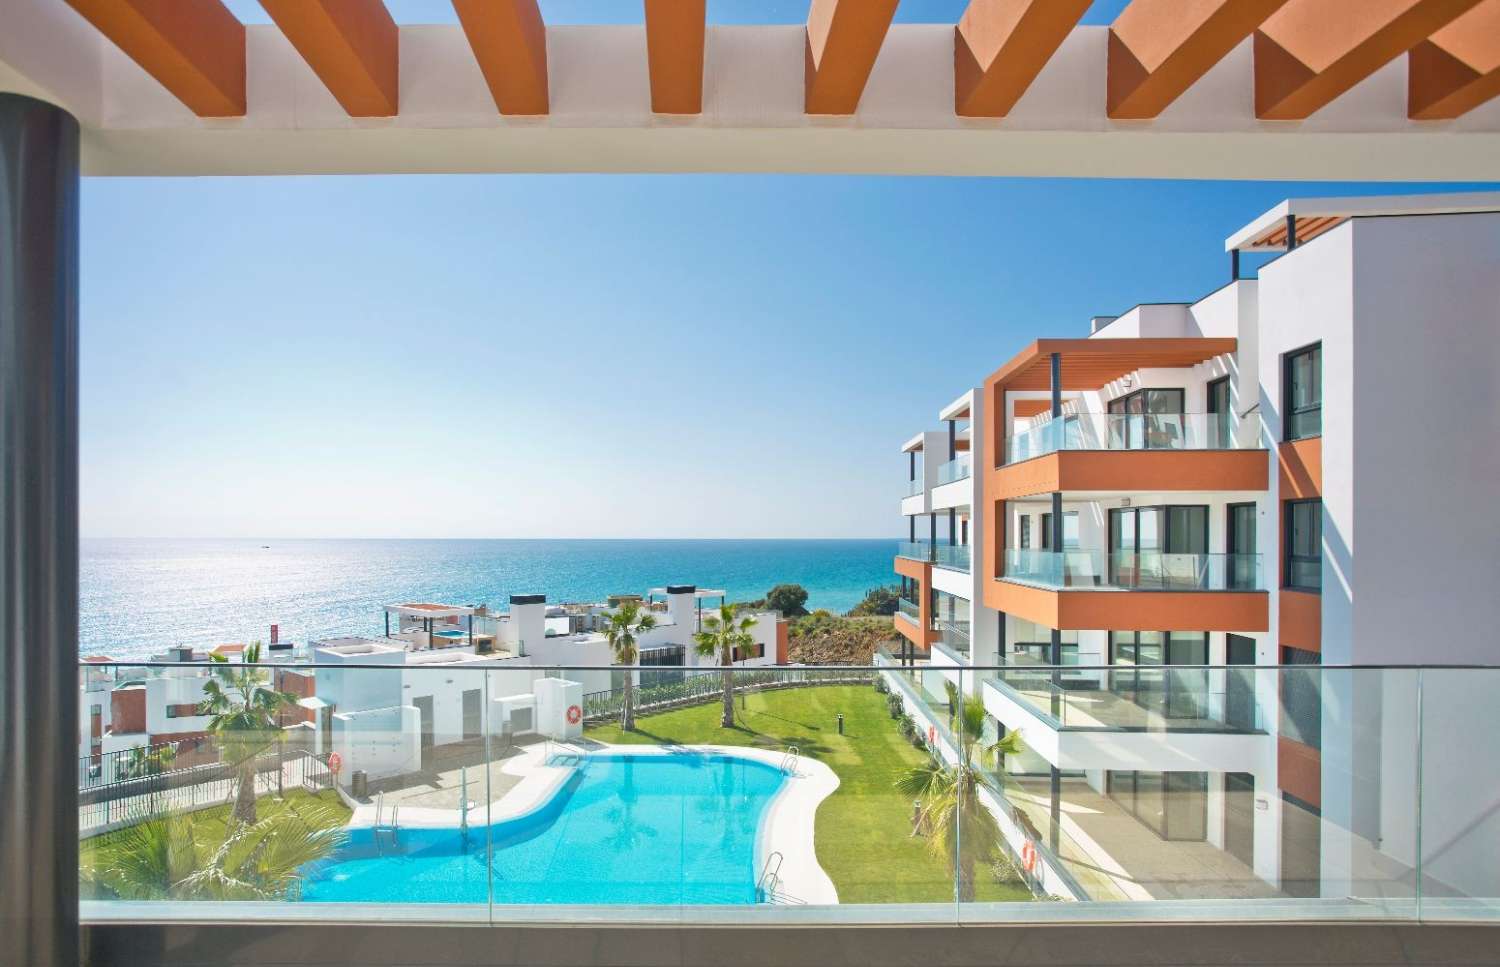 Amplio apartamento de 3 dormitorios en ubicación privilegiada  a pocos minutos de la playa con terraza de 62 m2